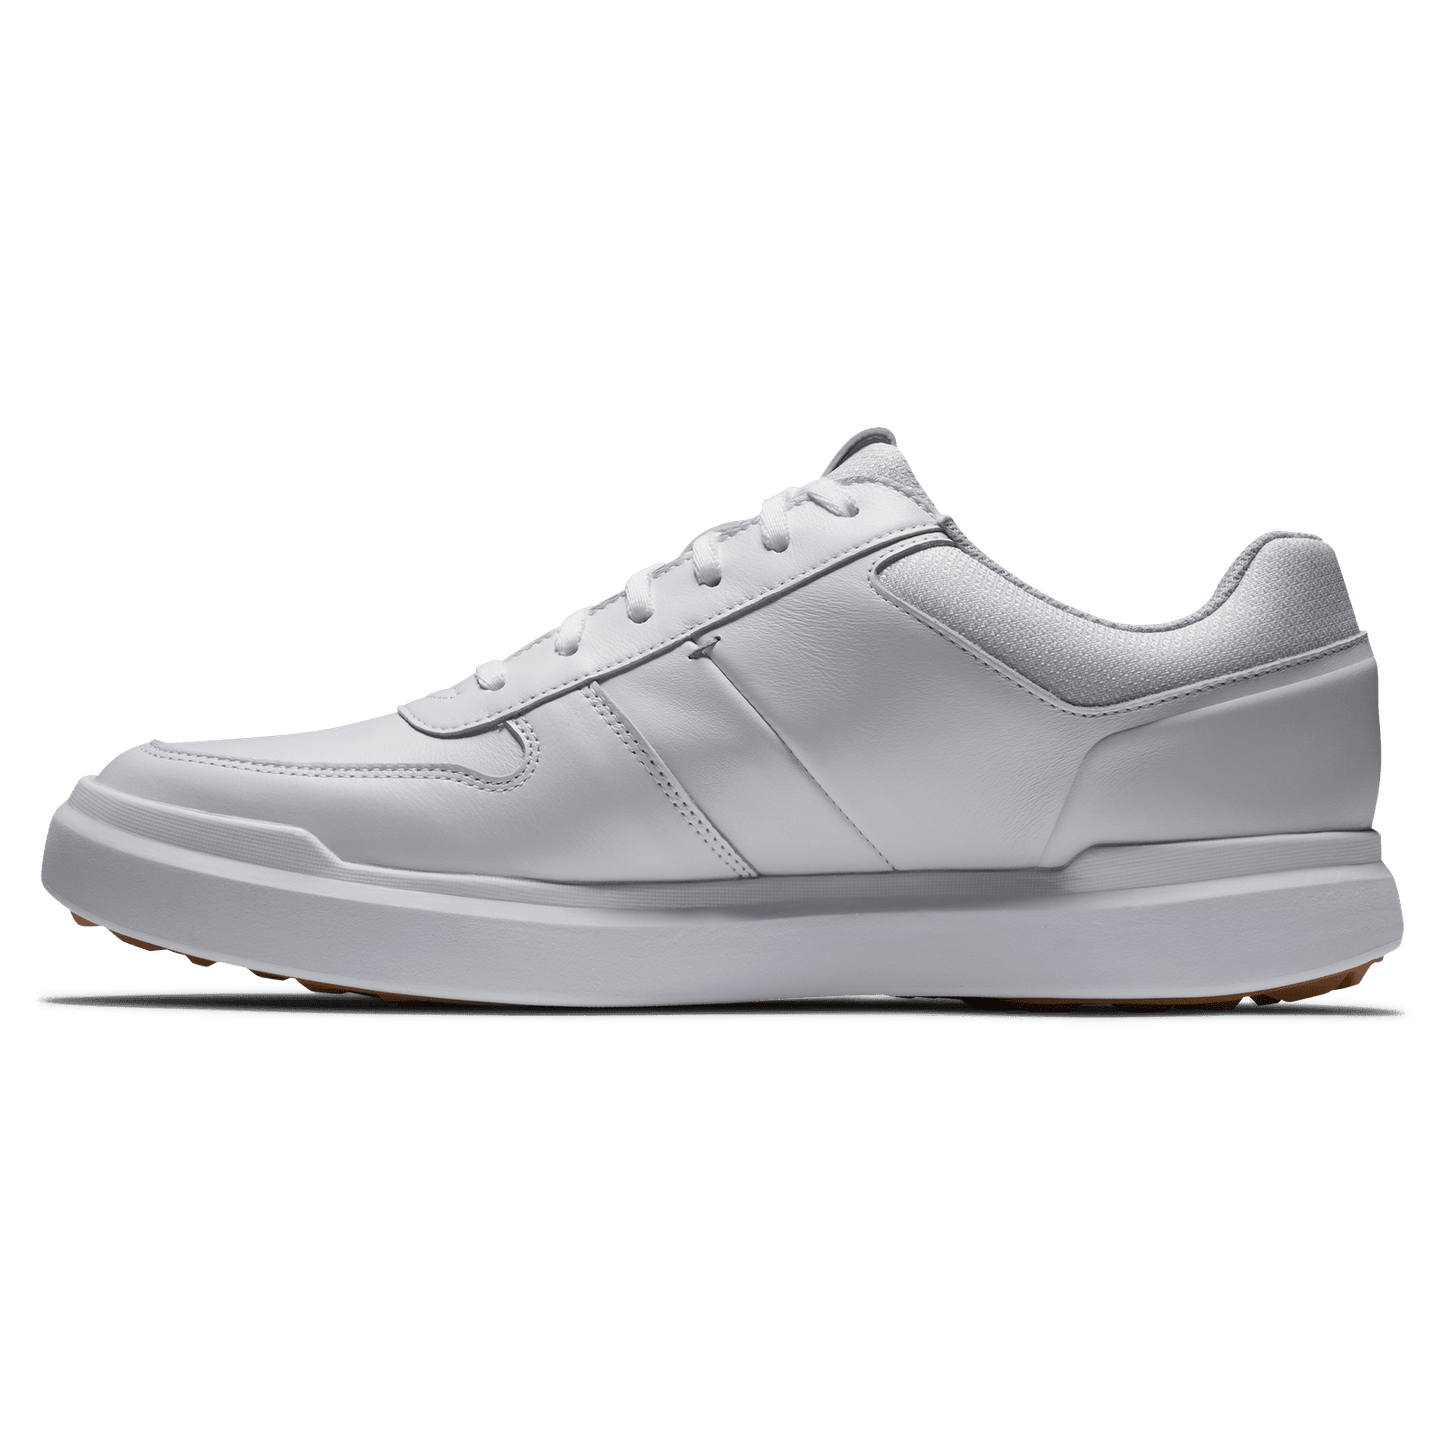 Footjoy Contour Casual Golf Shoes 54370